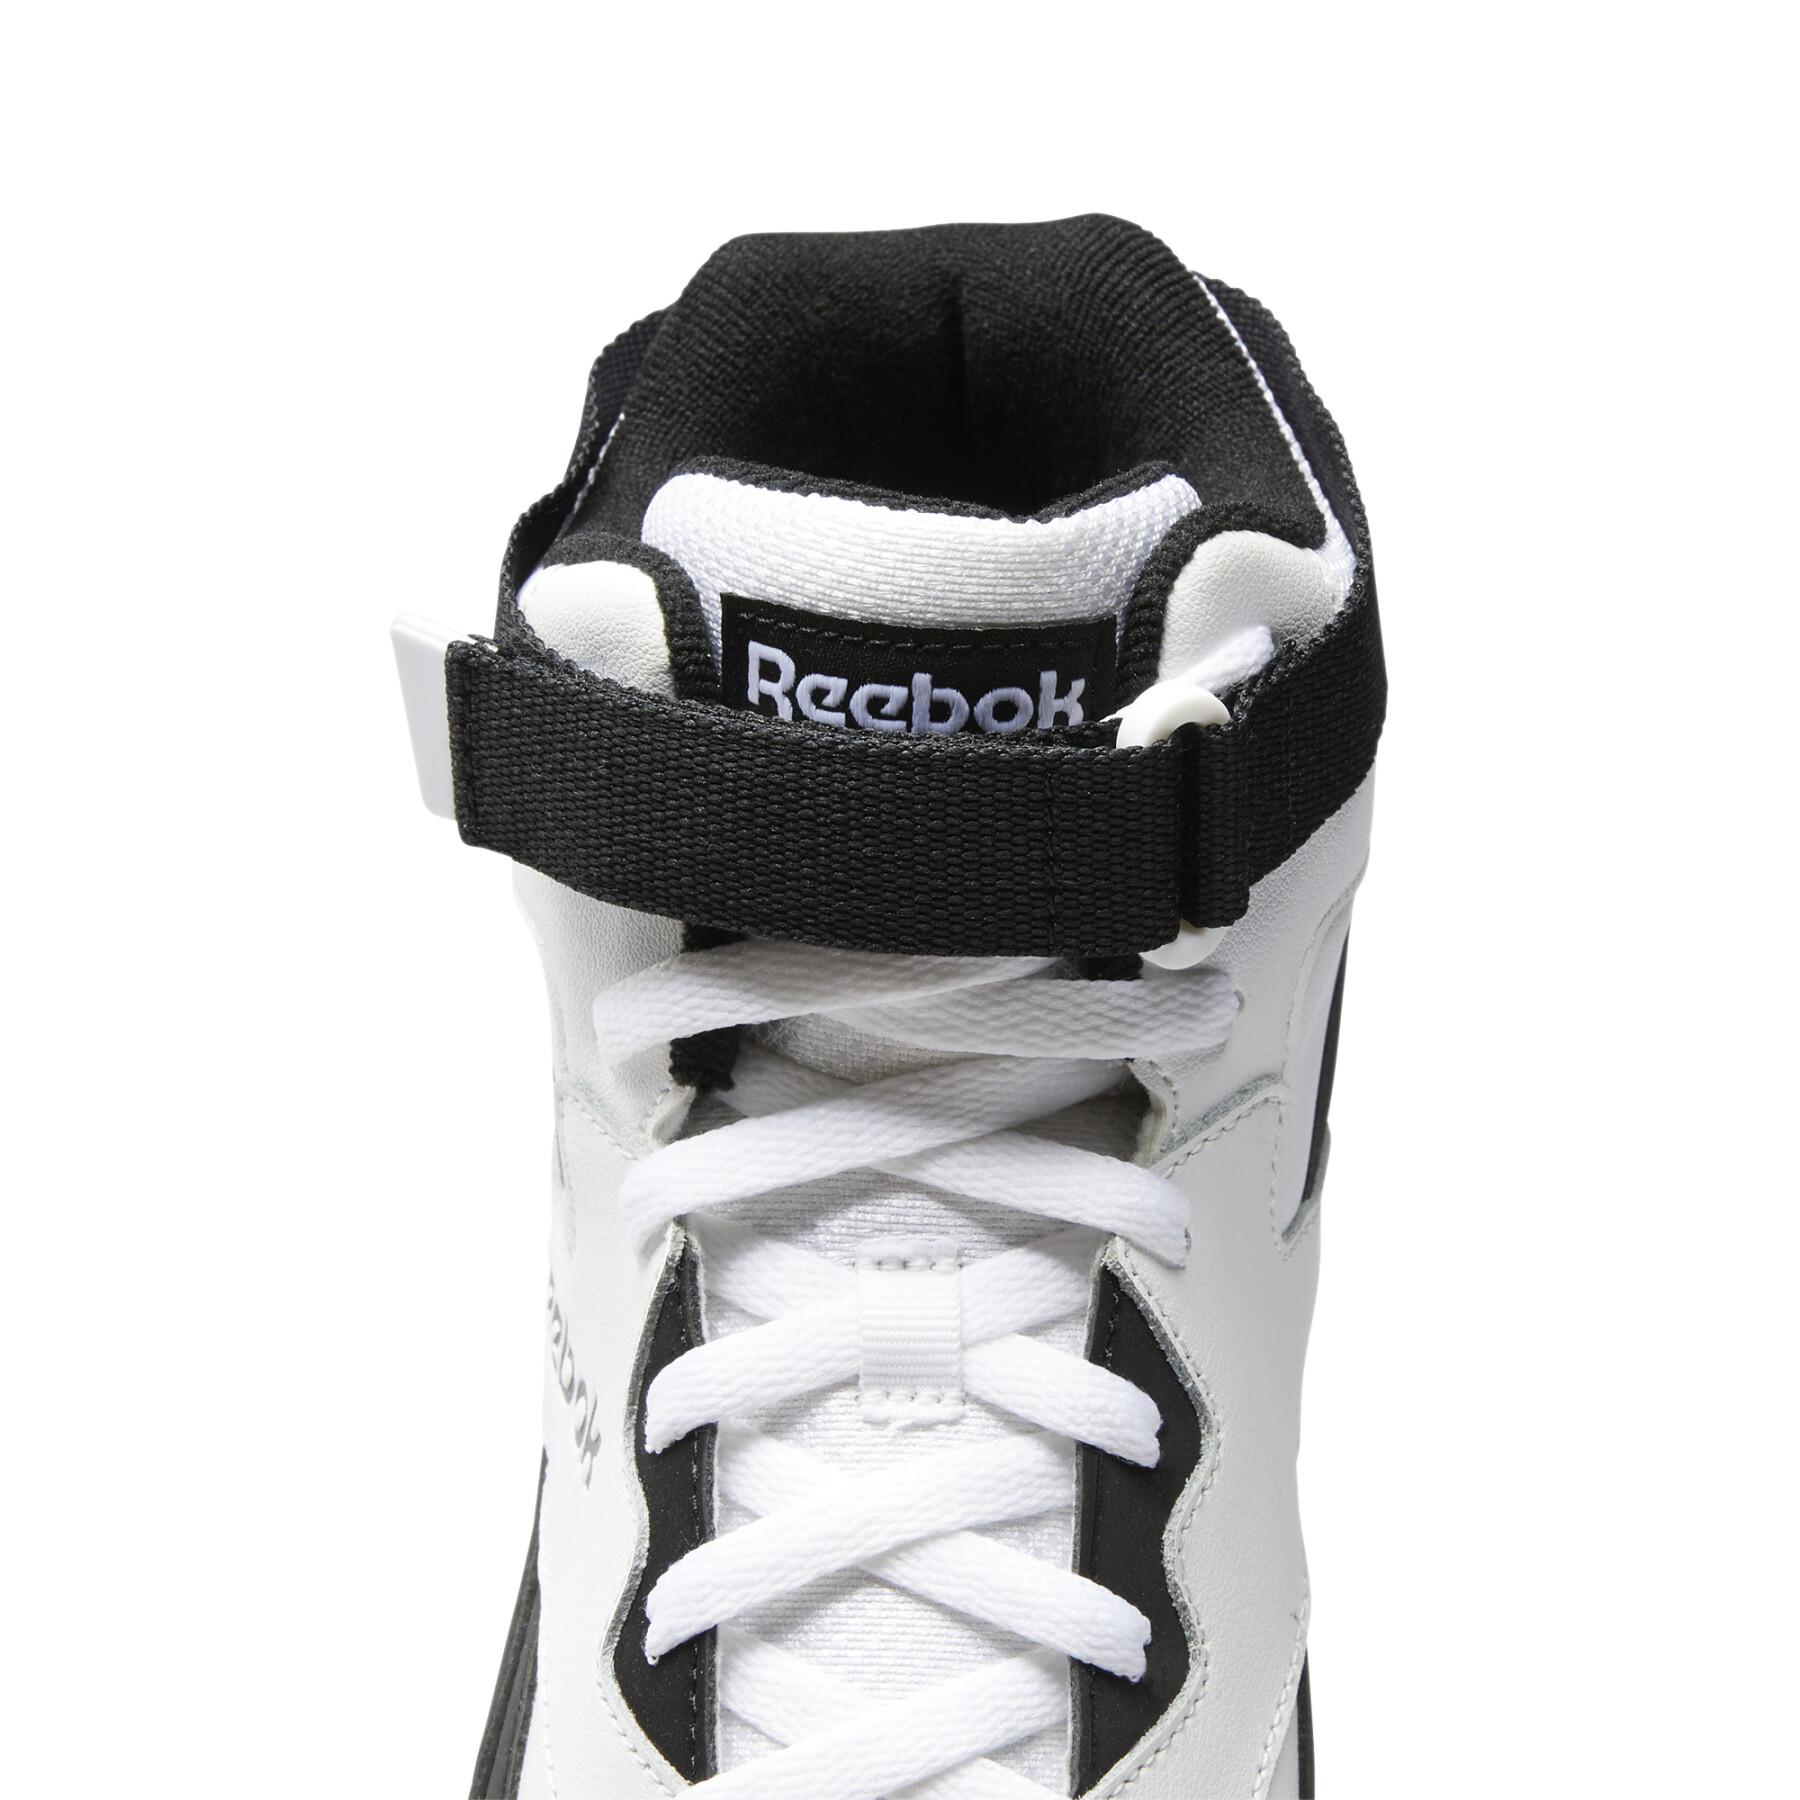 Schoenen Reebok Royal BB4500 Hi-Strap